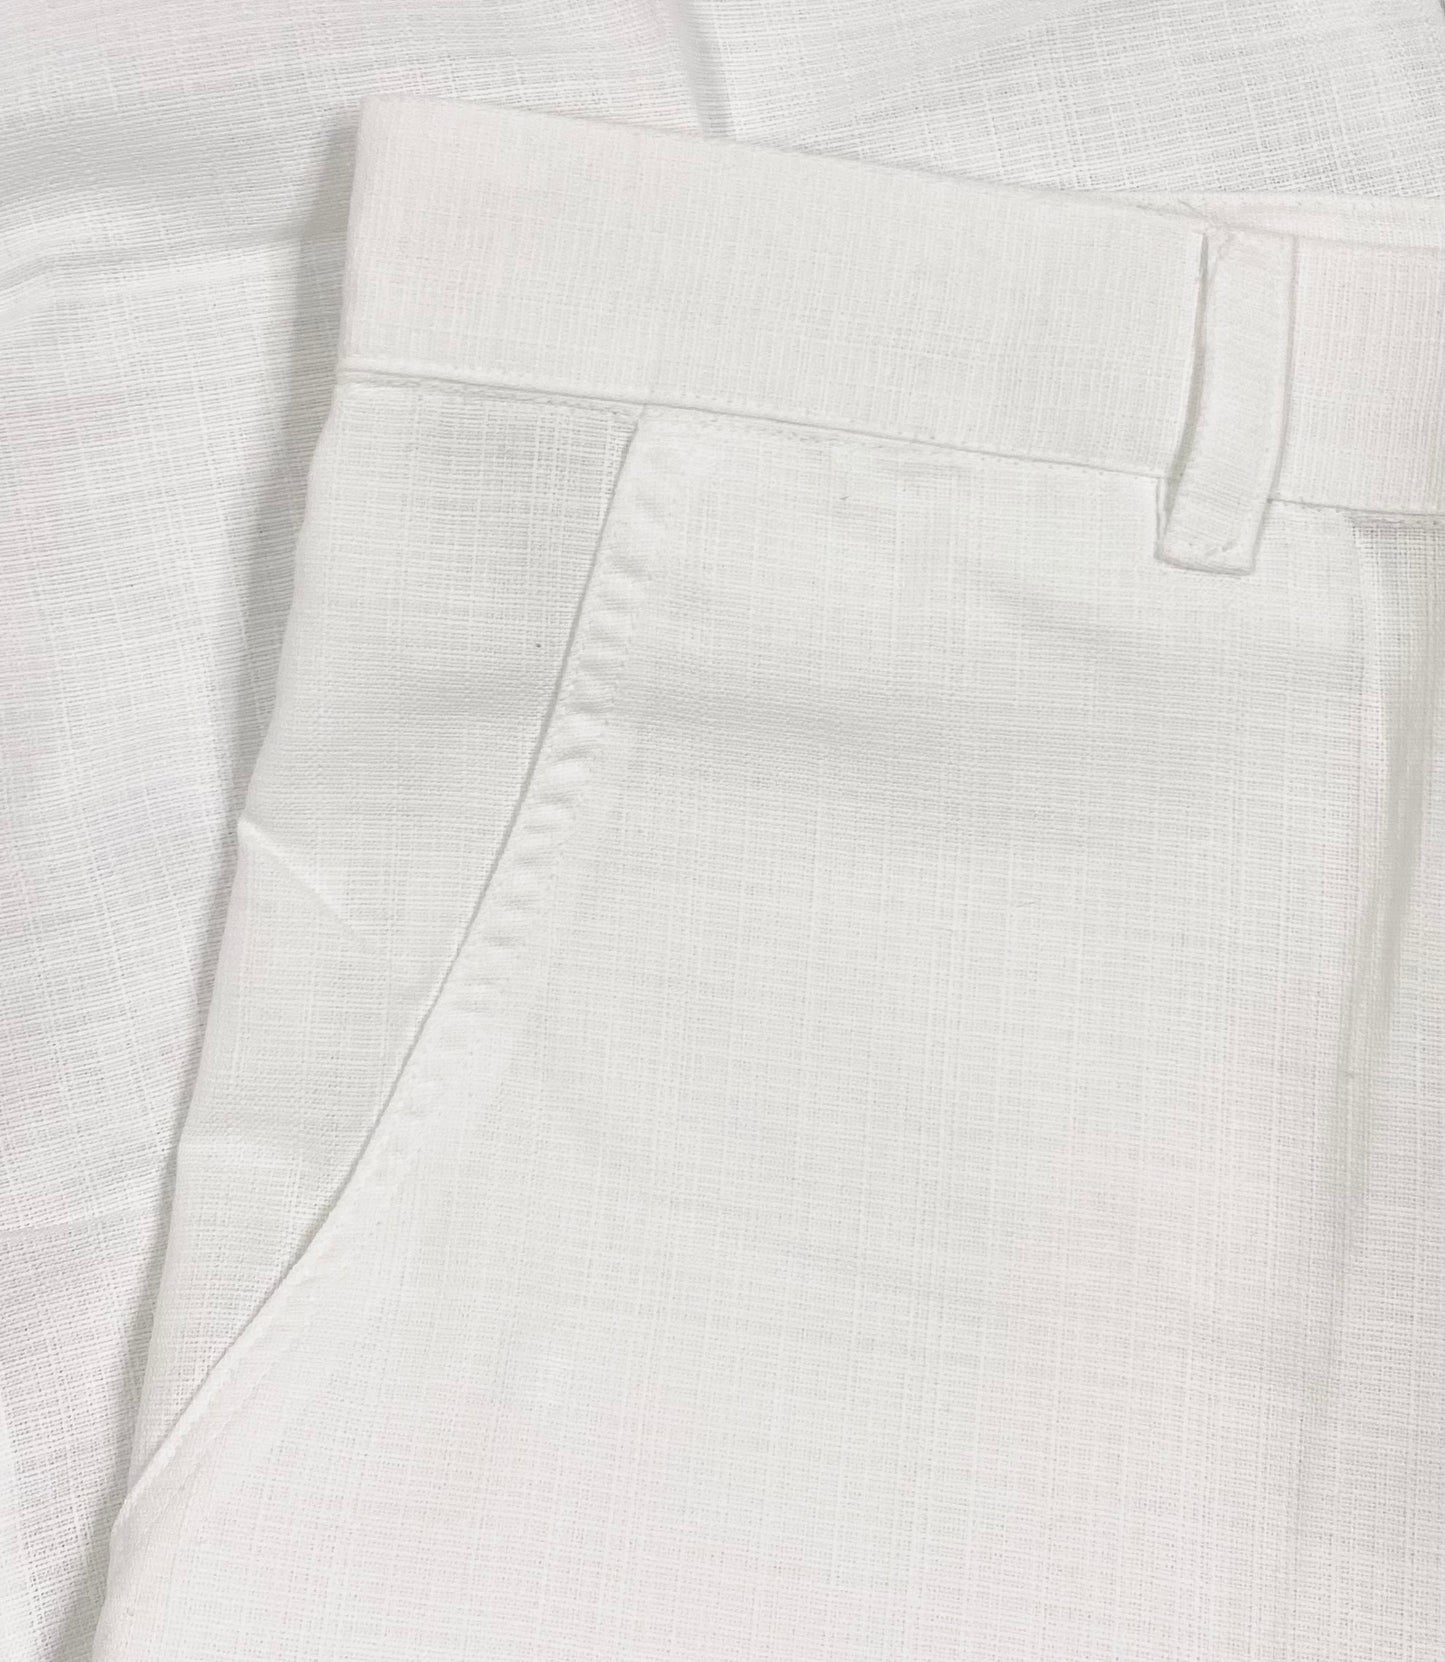 KIKE LINO Men's Pants, White Linen, Size 38, SKU 000313-10